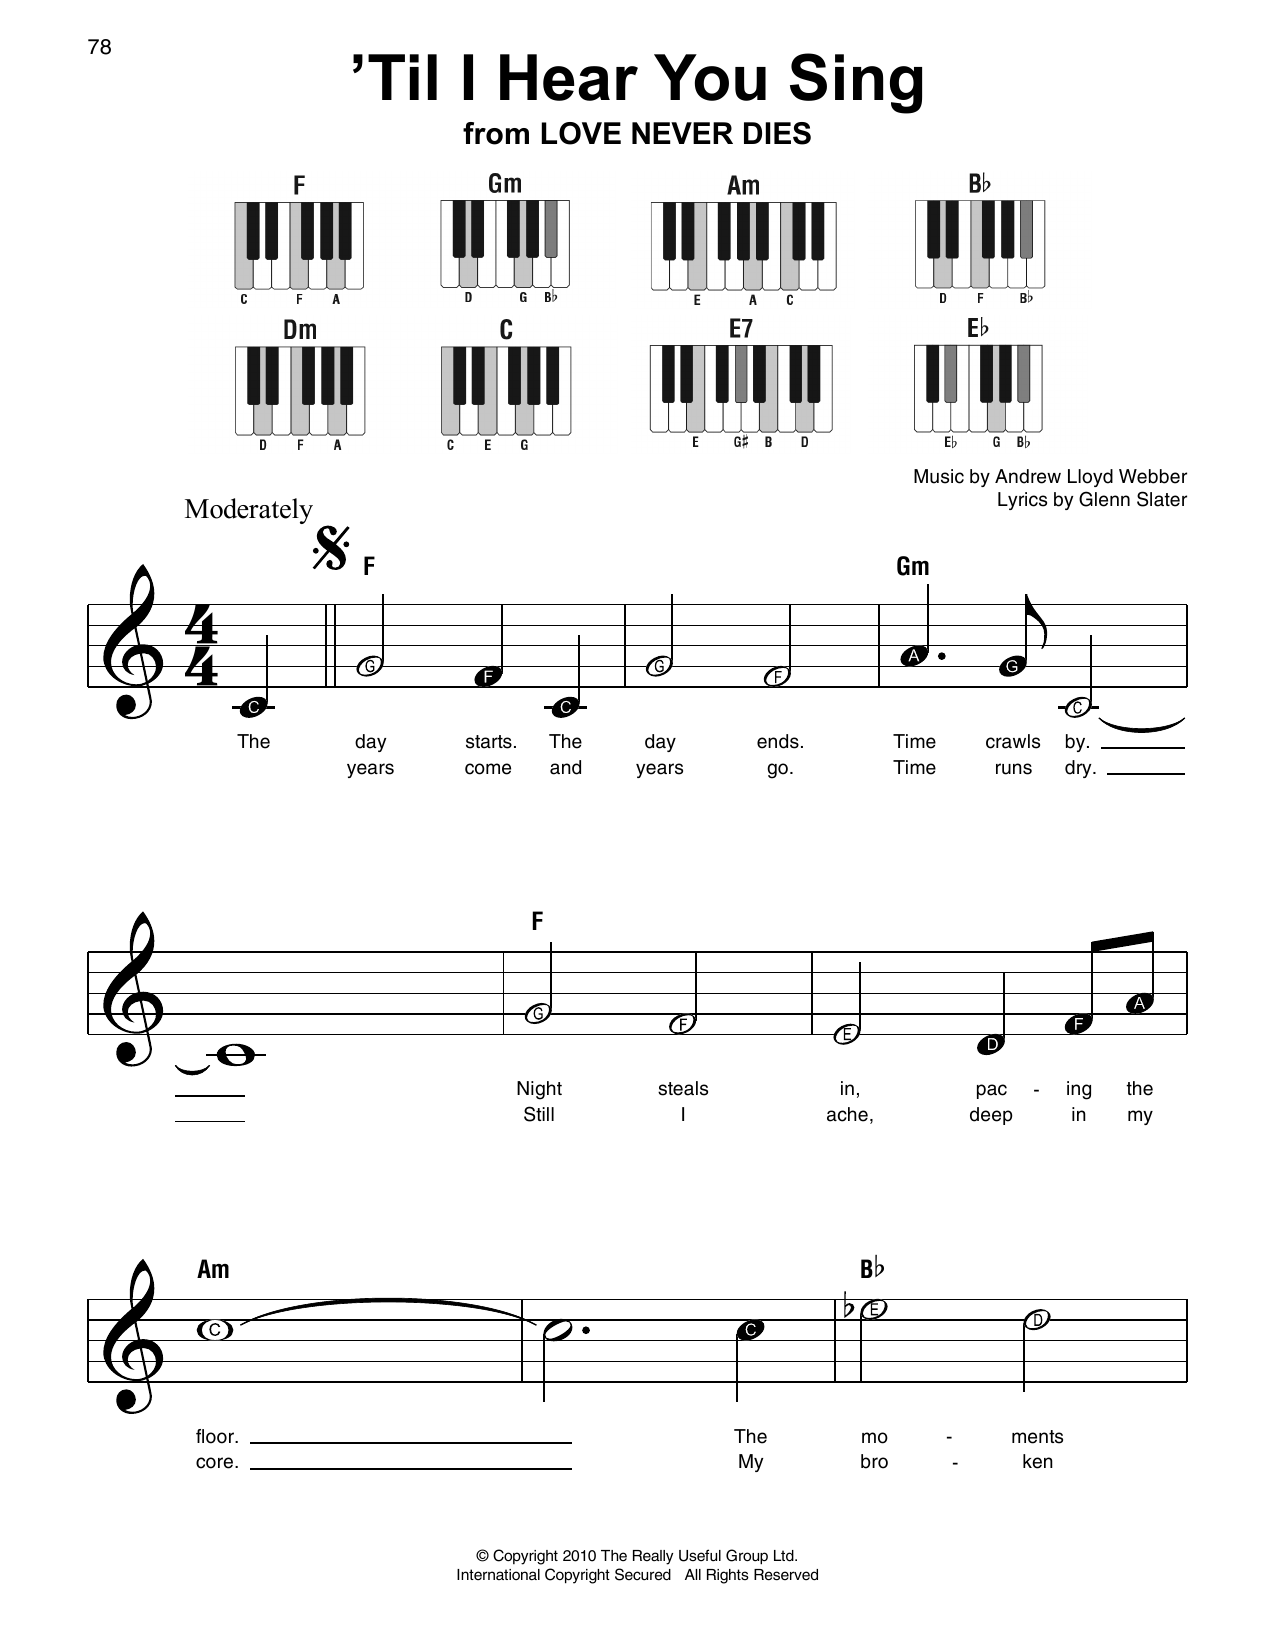 Download Andrew Lloyd Webber 'Til I Hear You Sing Sheet Music